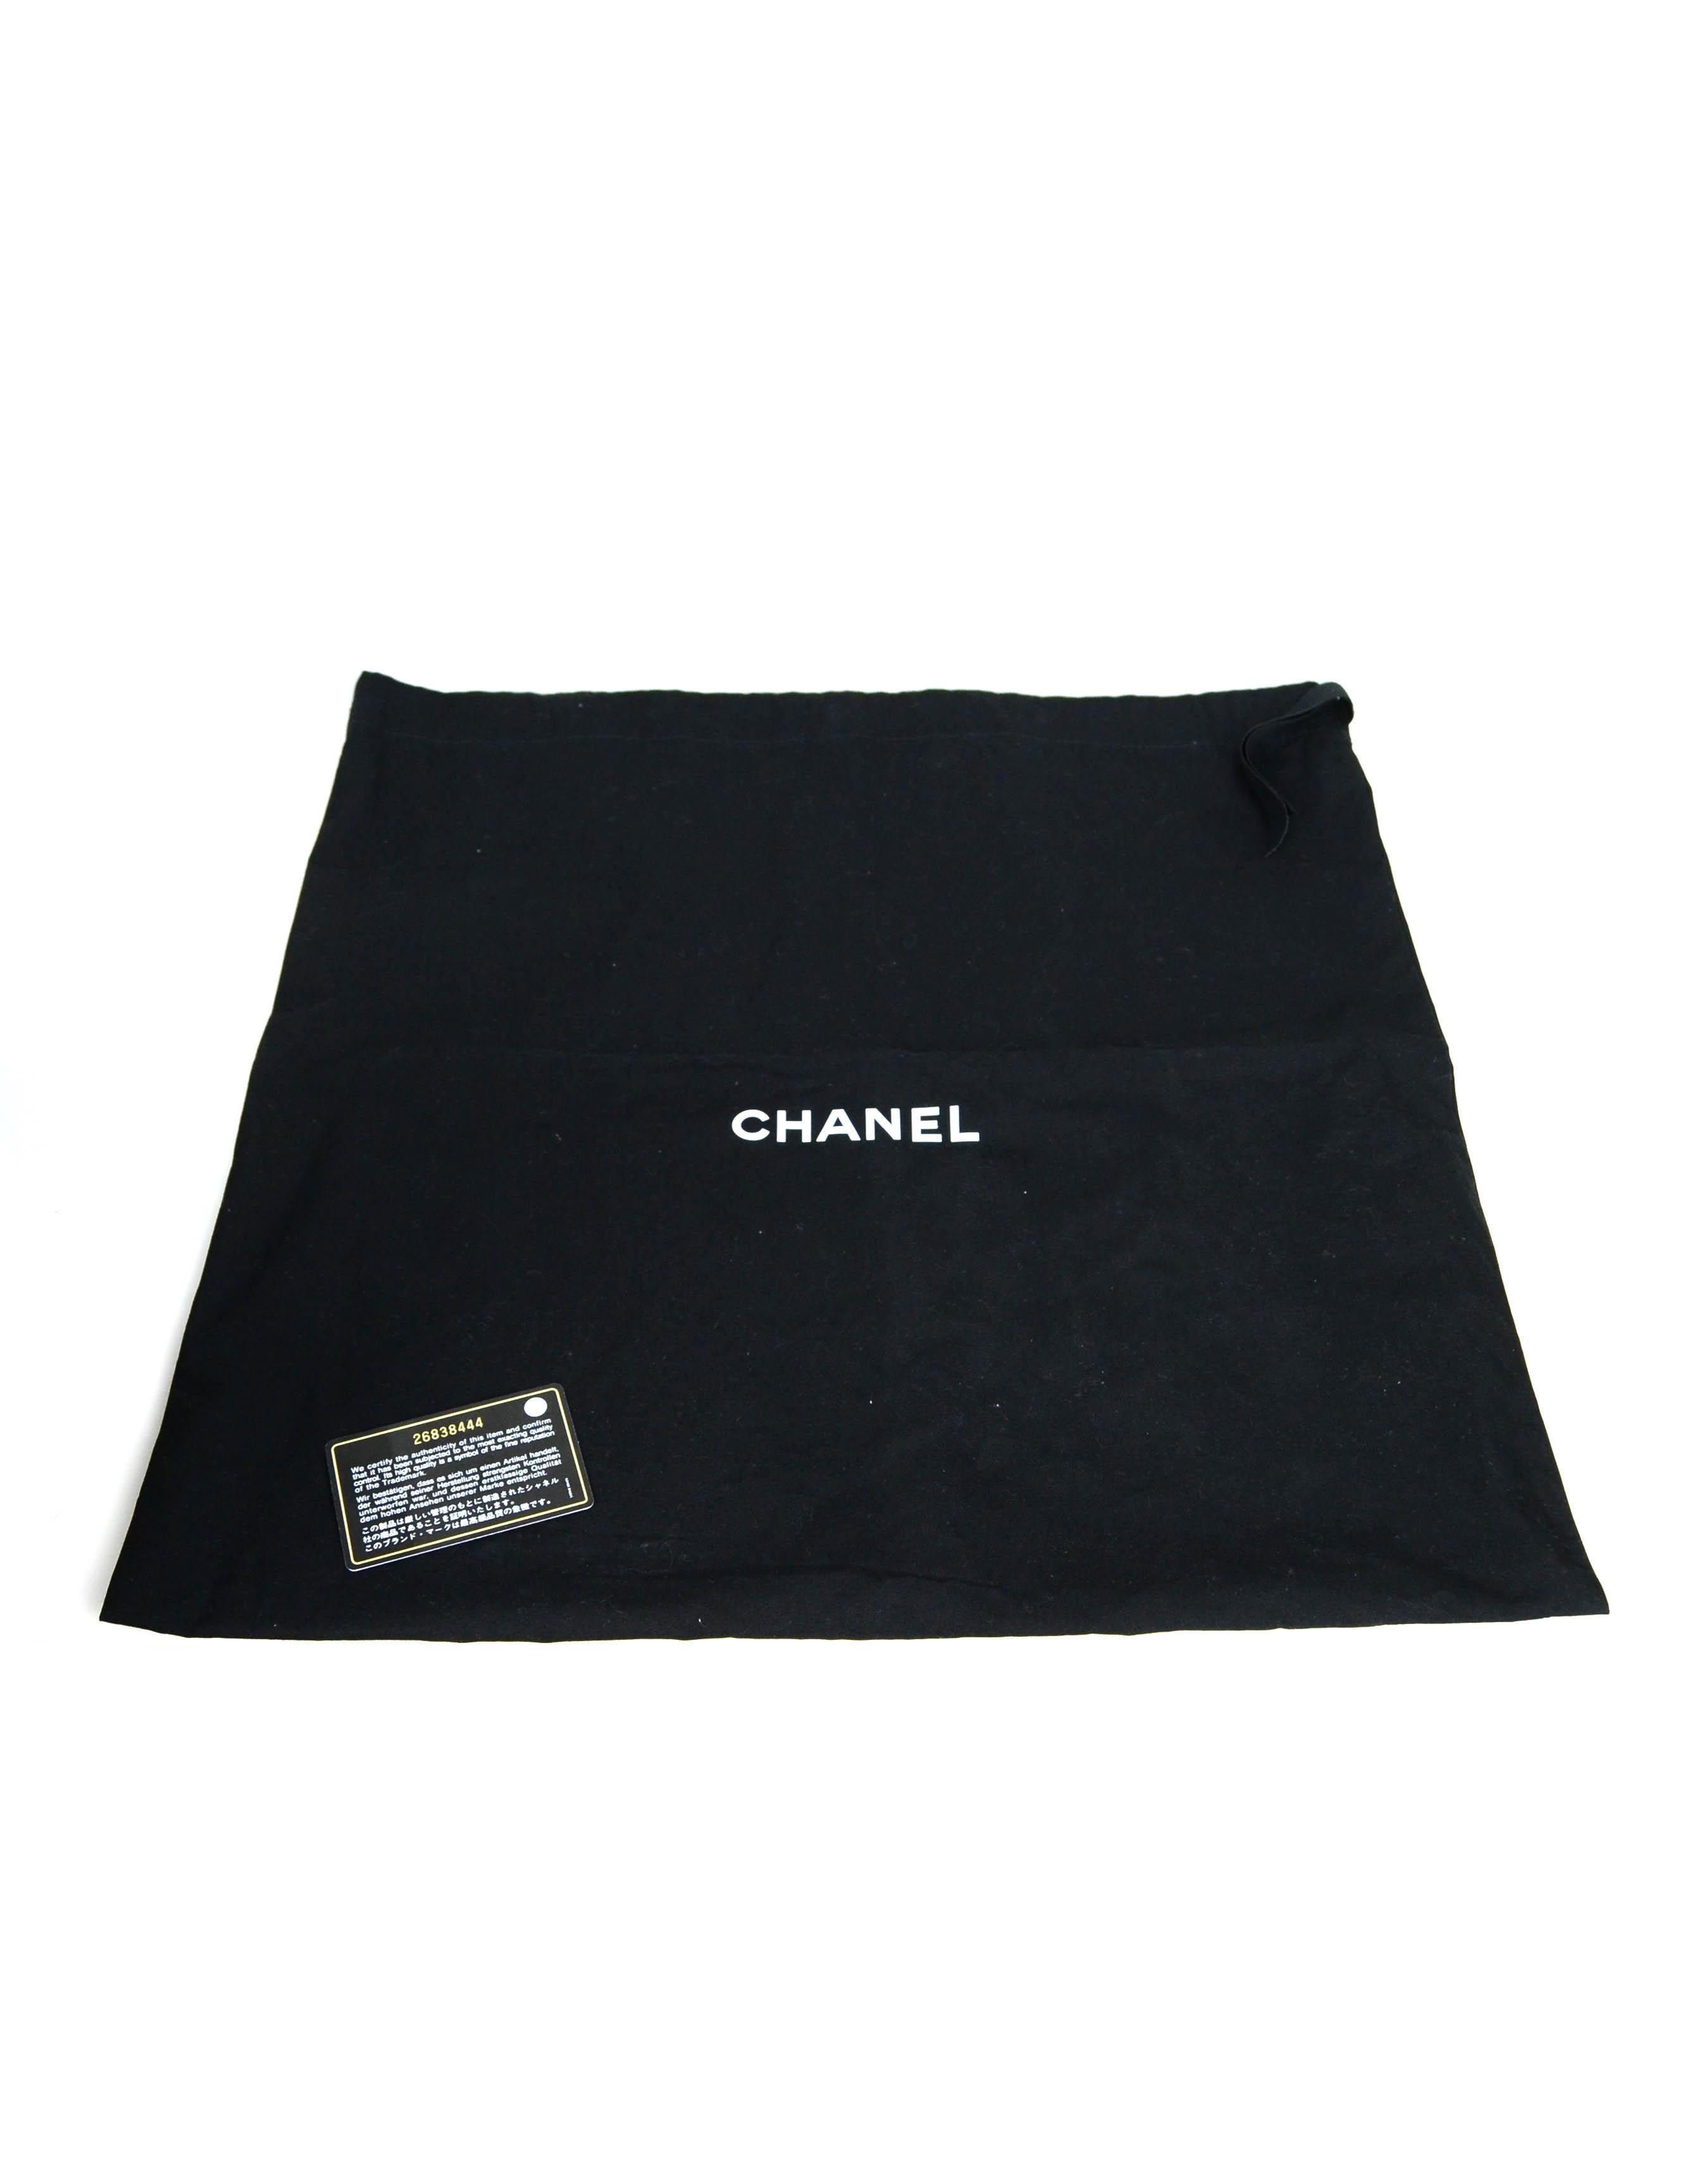 Chanel Black Woven Straw Raffia Medium Deauville Tote Bag 7